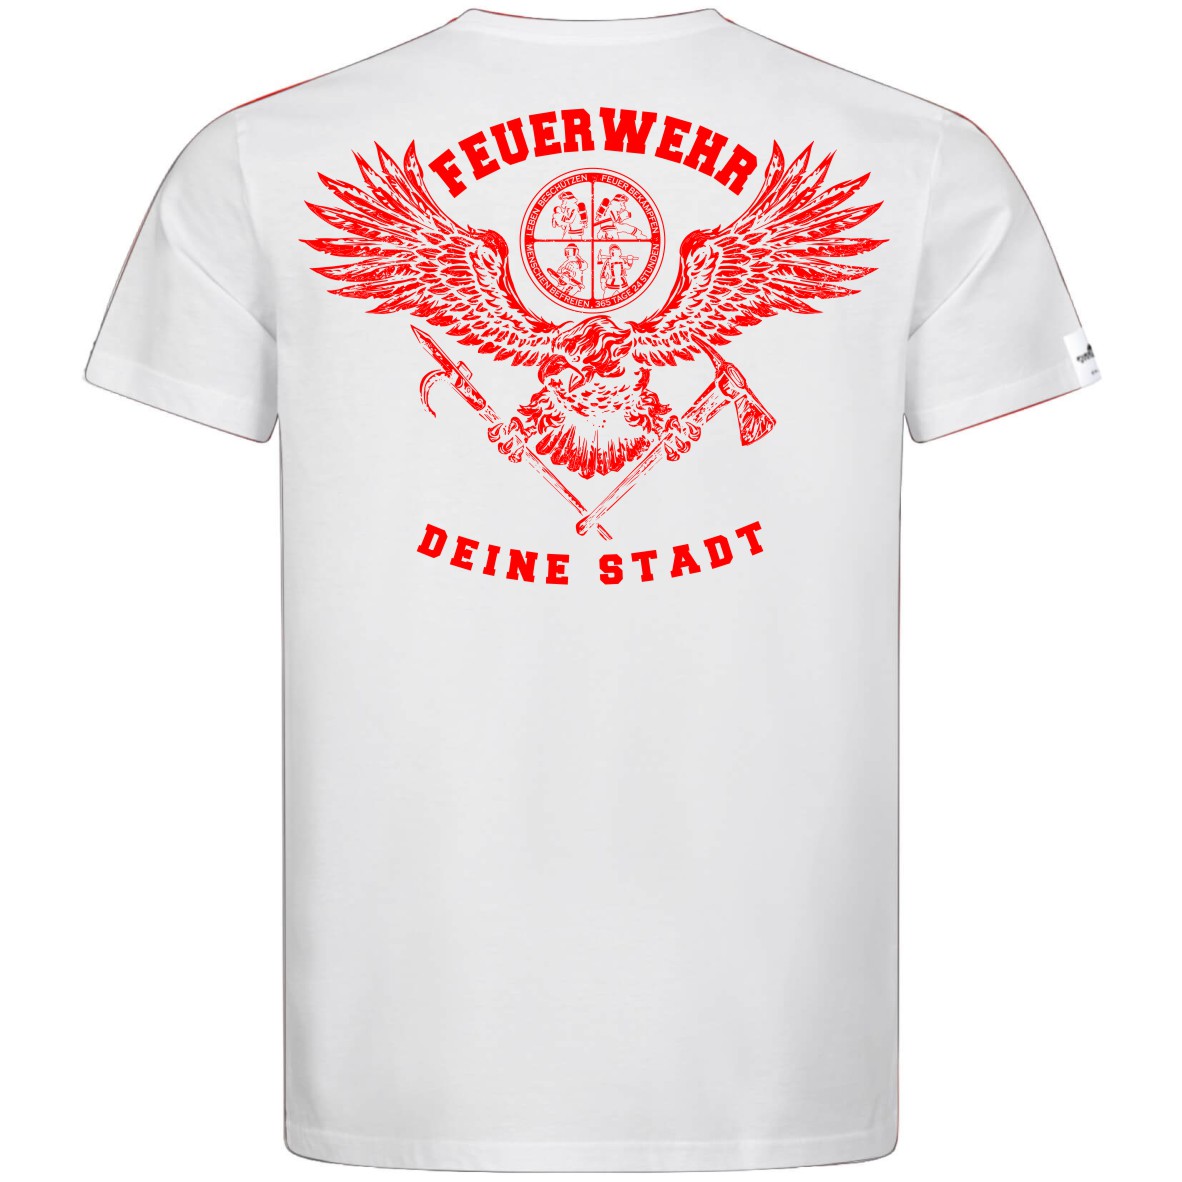 Teamwear Männer T-Shirt - Tradition + Deine Stadt